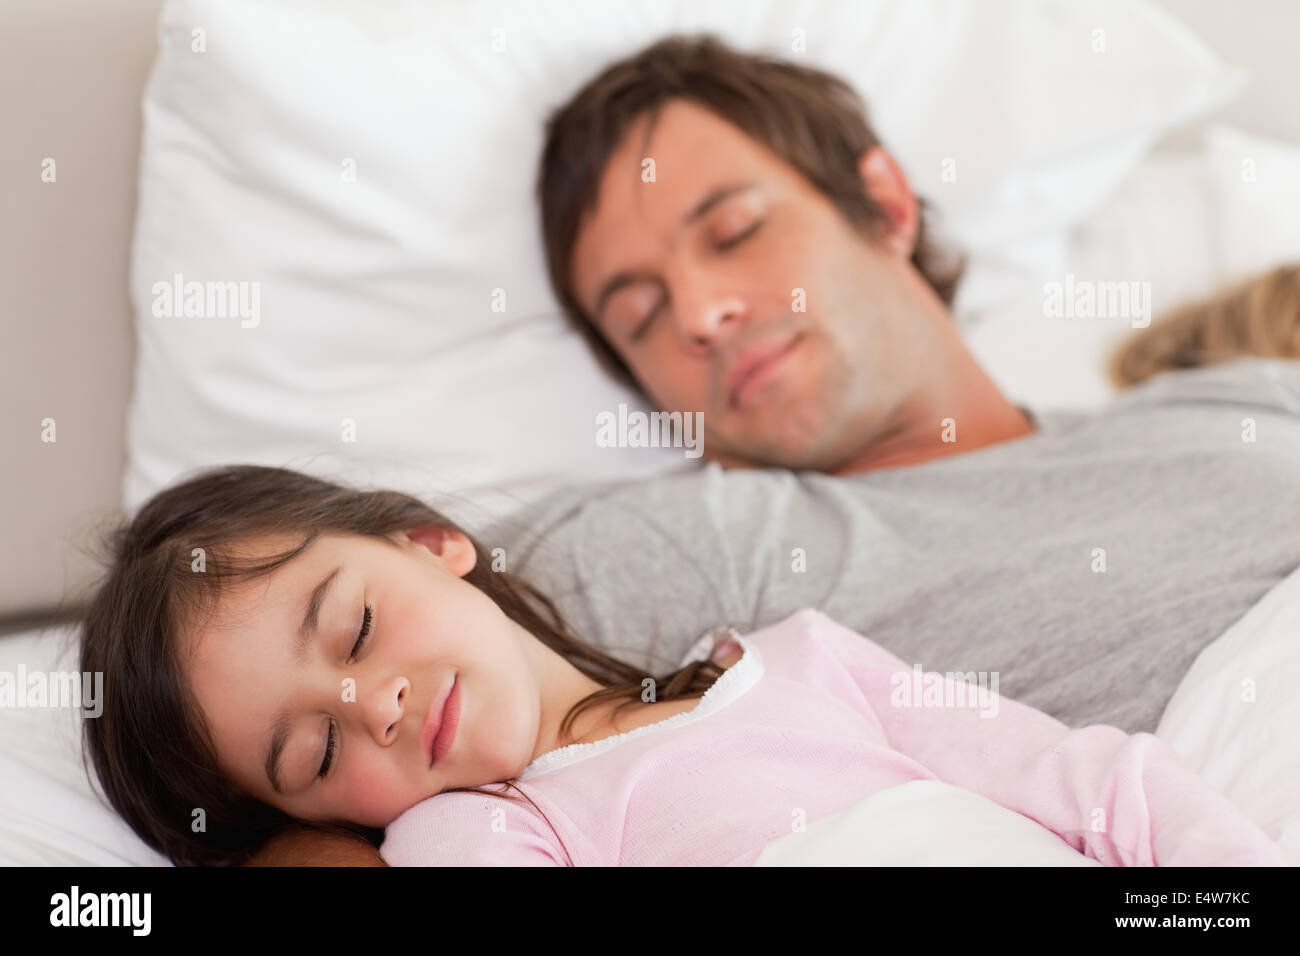 Девочка подросток спит с папой